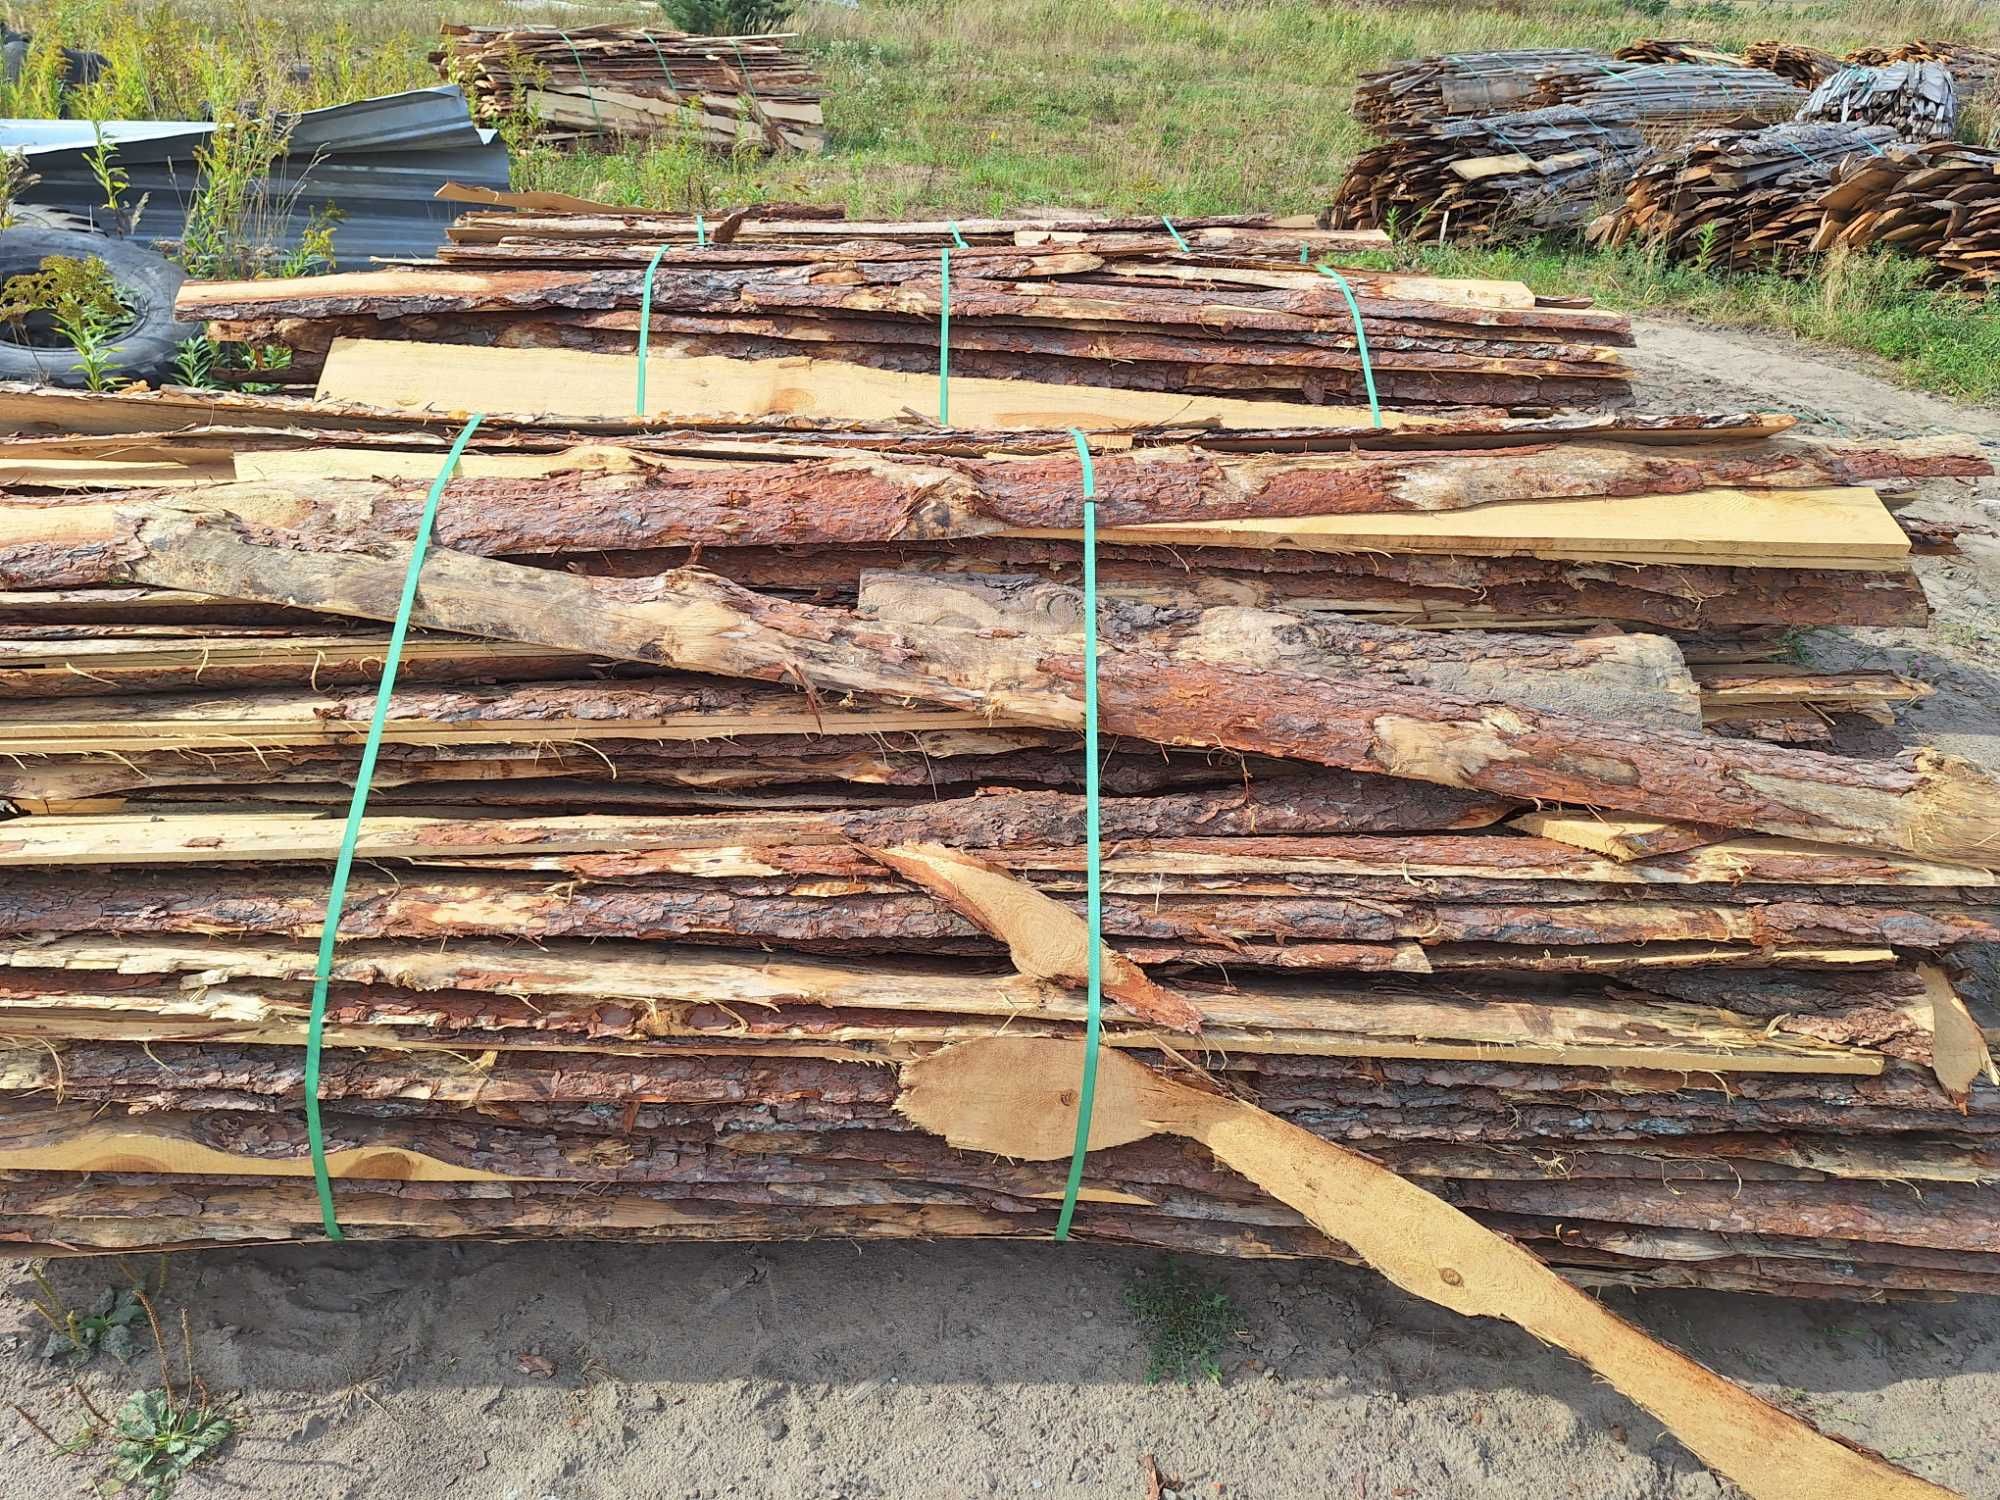 Obladry Tartaczne Drewno Opałowe paczka 3-4 metry przestrzenne